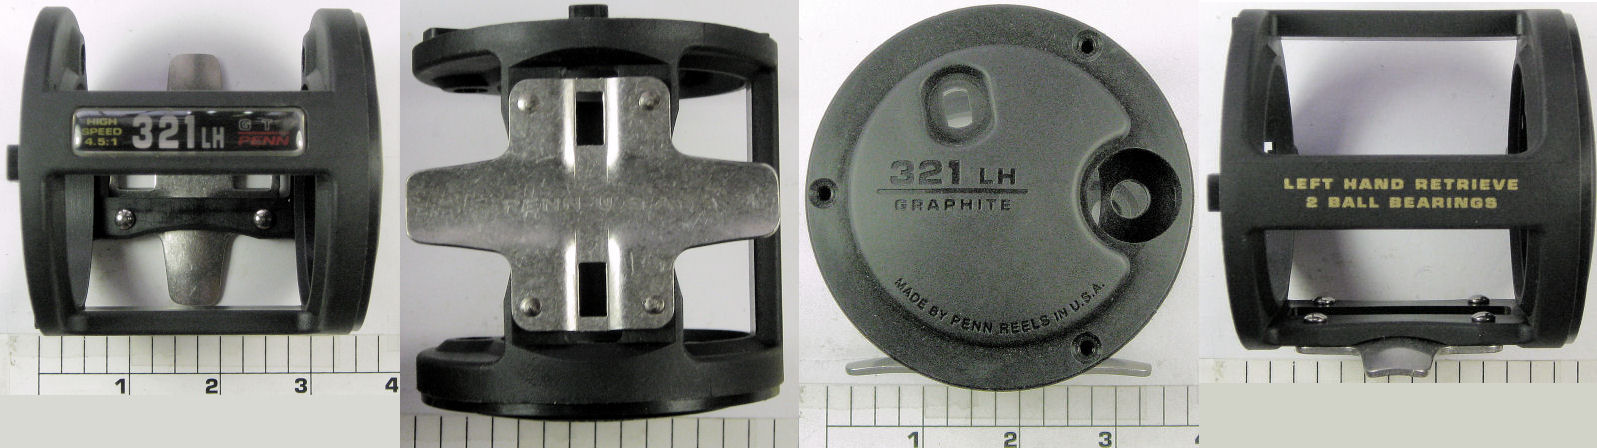 183-321LH Frame (Left Hand)